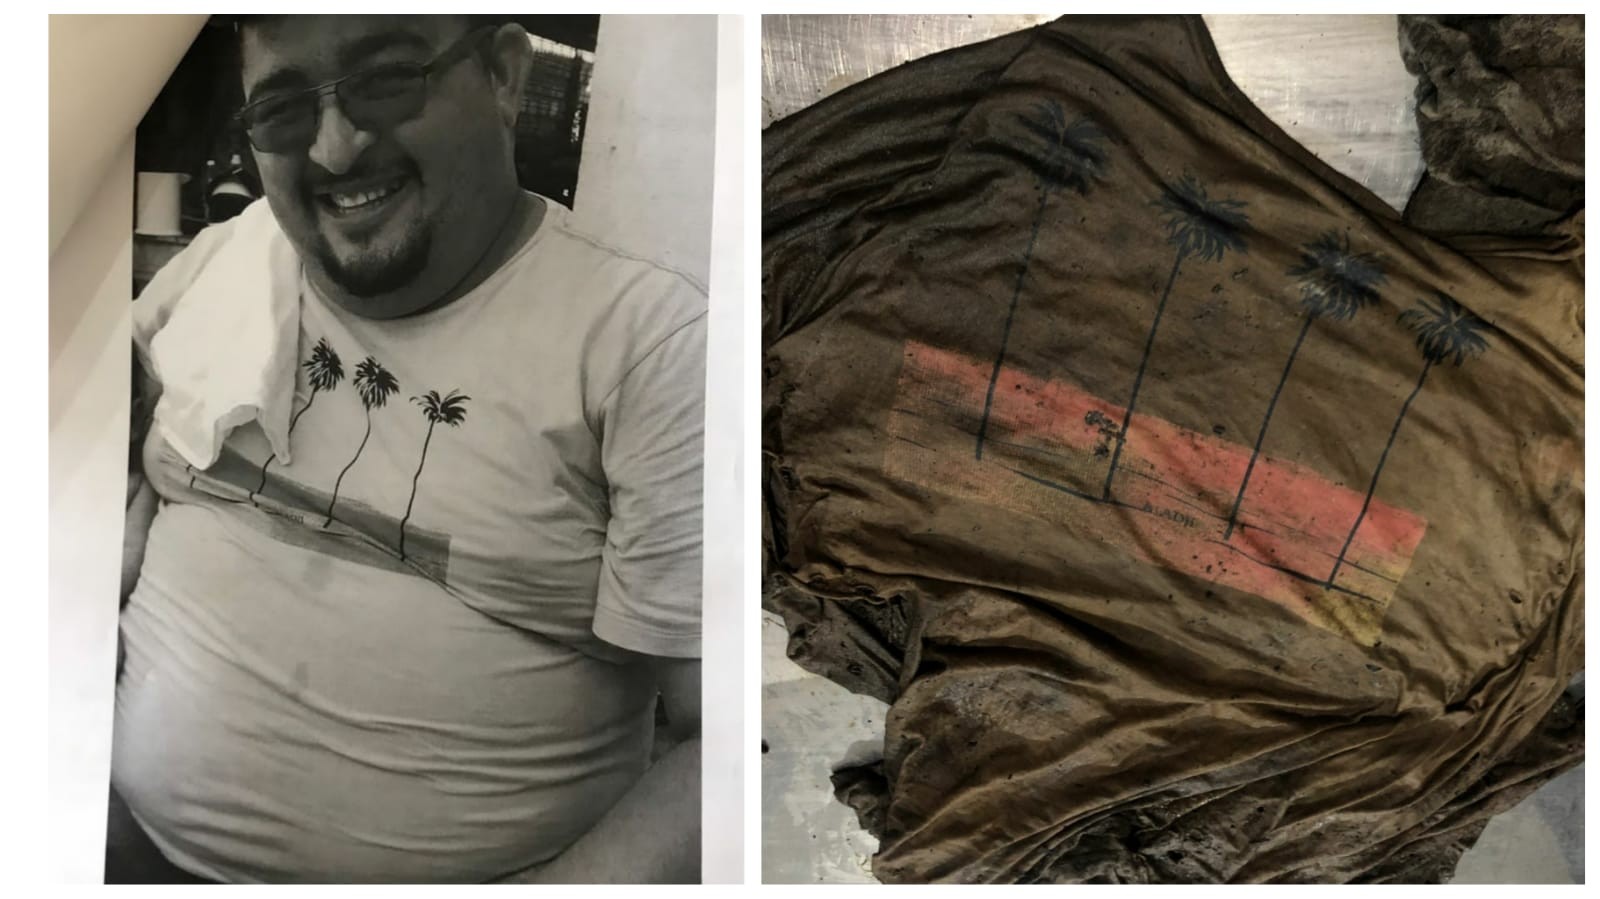 Em foto, desaparecido usava camisa semelhante à encontrada com ossada humana em Belterra